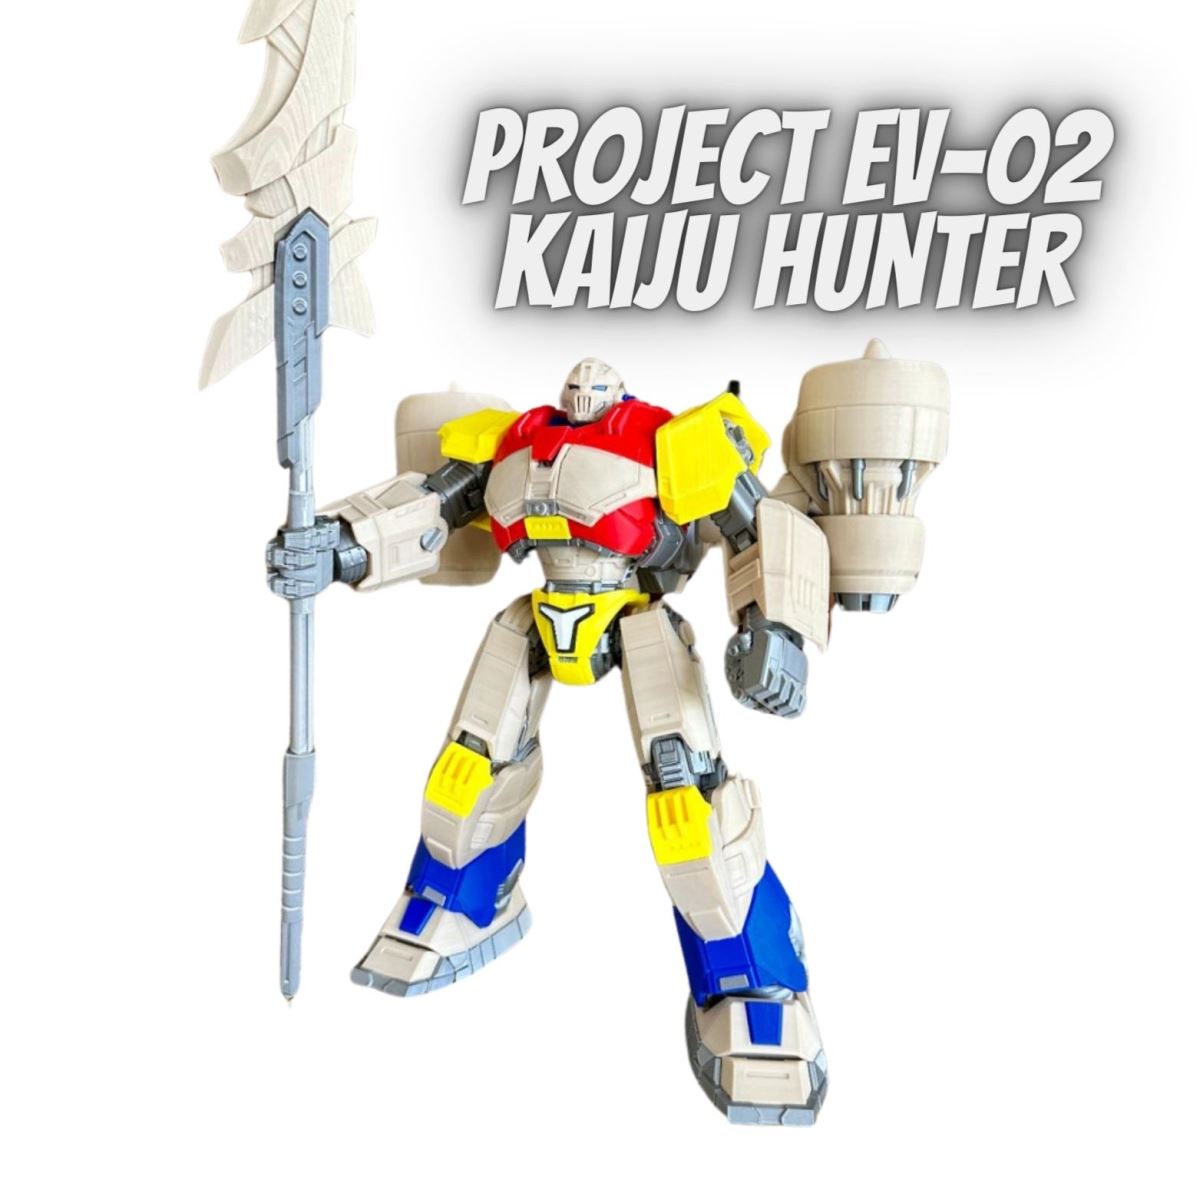 Project EV-02 Kaiju Hunter